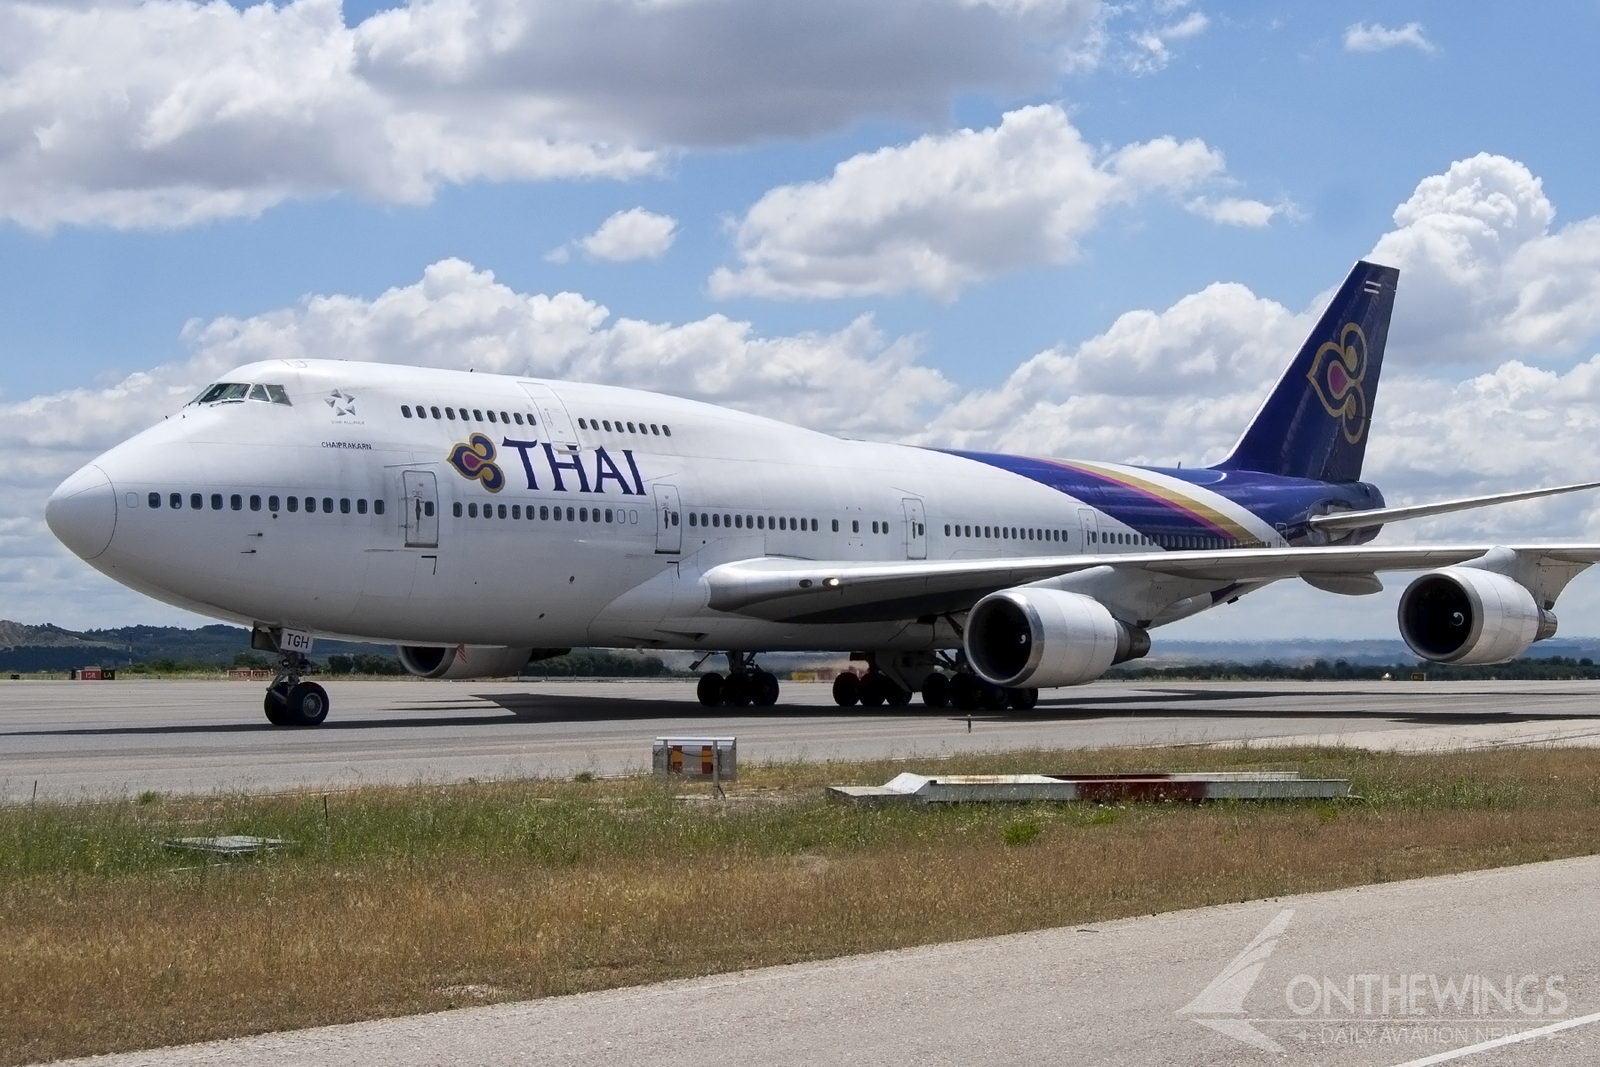 Thai Airways operó el 747 en su versión 400 durante 29 años: desde 1991 hasta la llegada de la pandemia en 2020